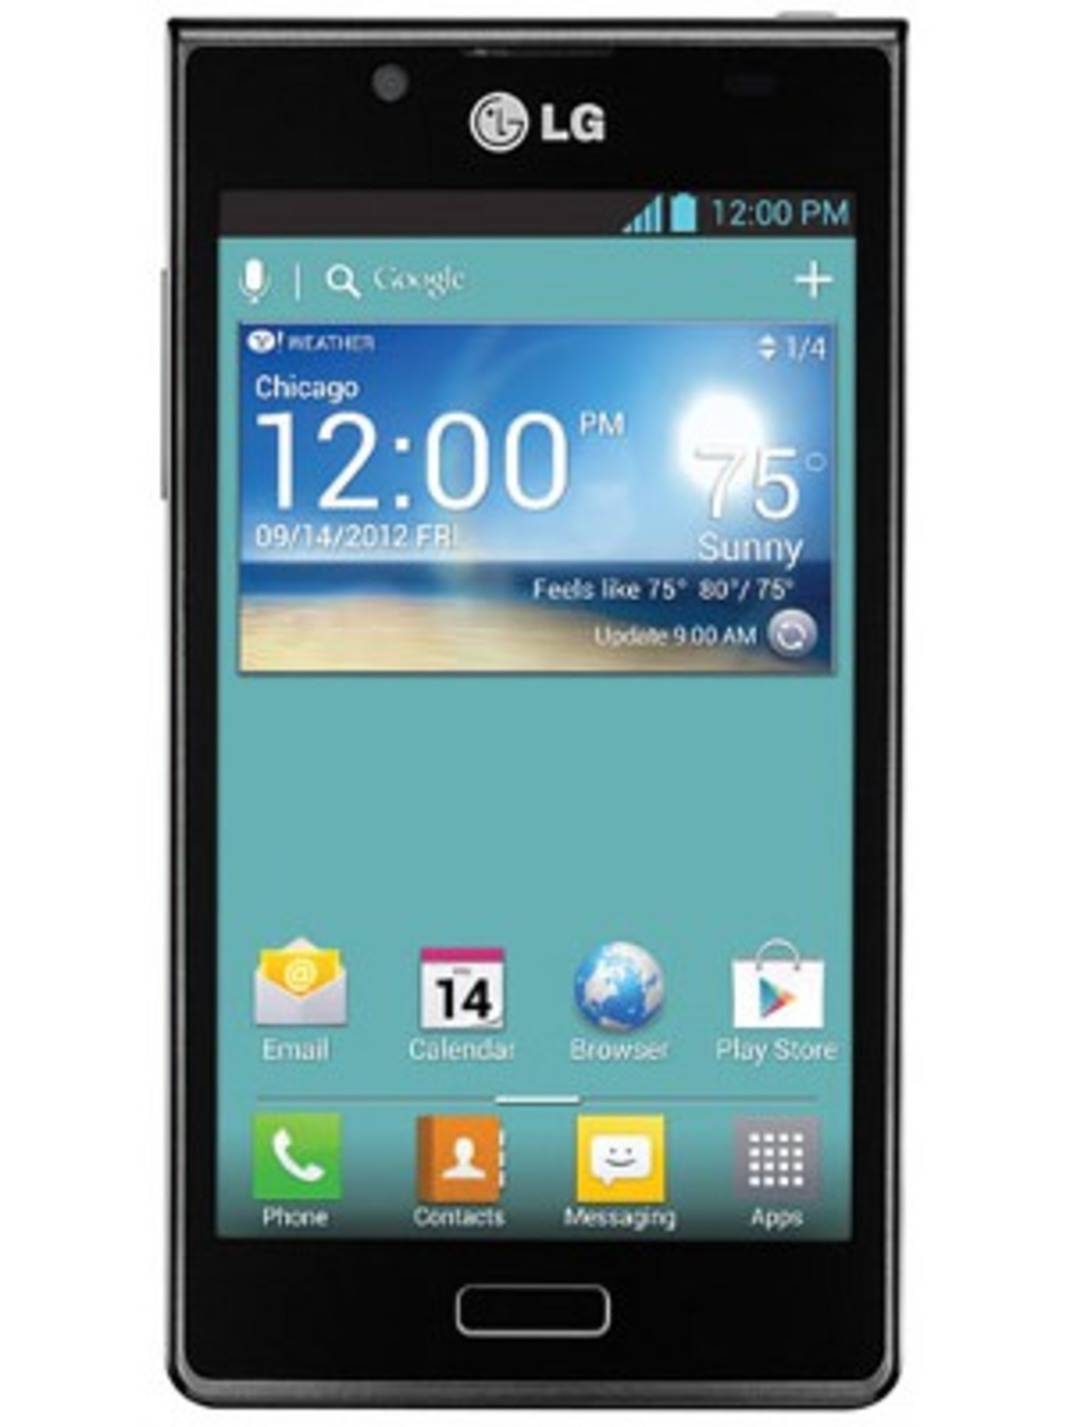 Lg телефоны программы. LG телефон. LG смартфон 2012. LG телефон сенсорный. Модели телефонов LG андроид.